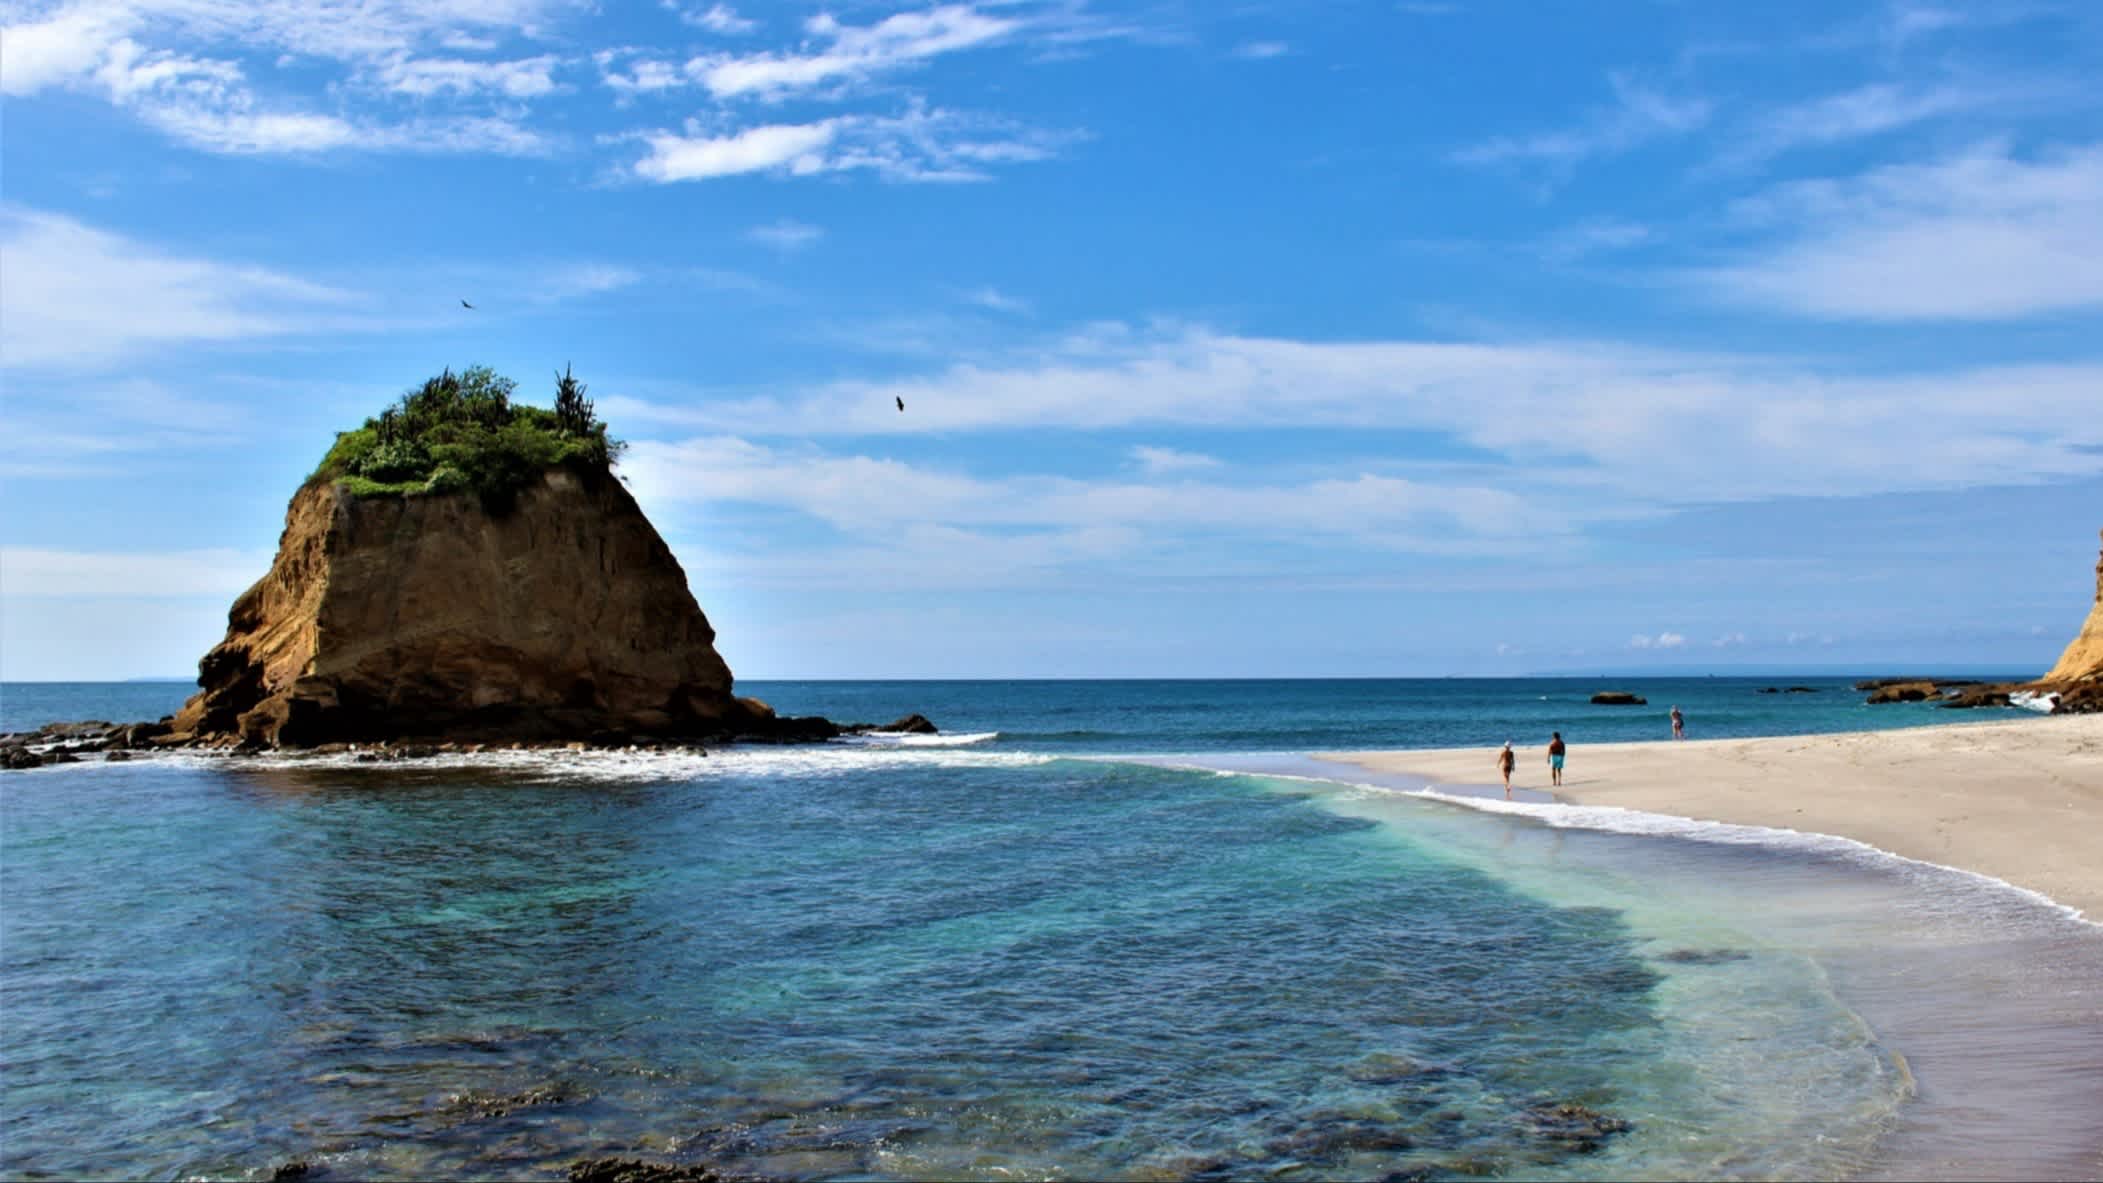 Der Strand Playa Los Frailes, Provinz Manabí, Ecuador bei Sonnenschein und mit Blick auf den hellen Sand sowie einer kleinen vorgelagerten Insel und zwei Menschen die am Strand spazieren.